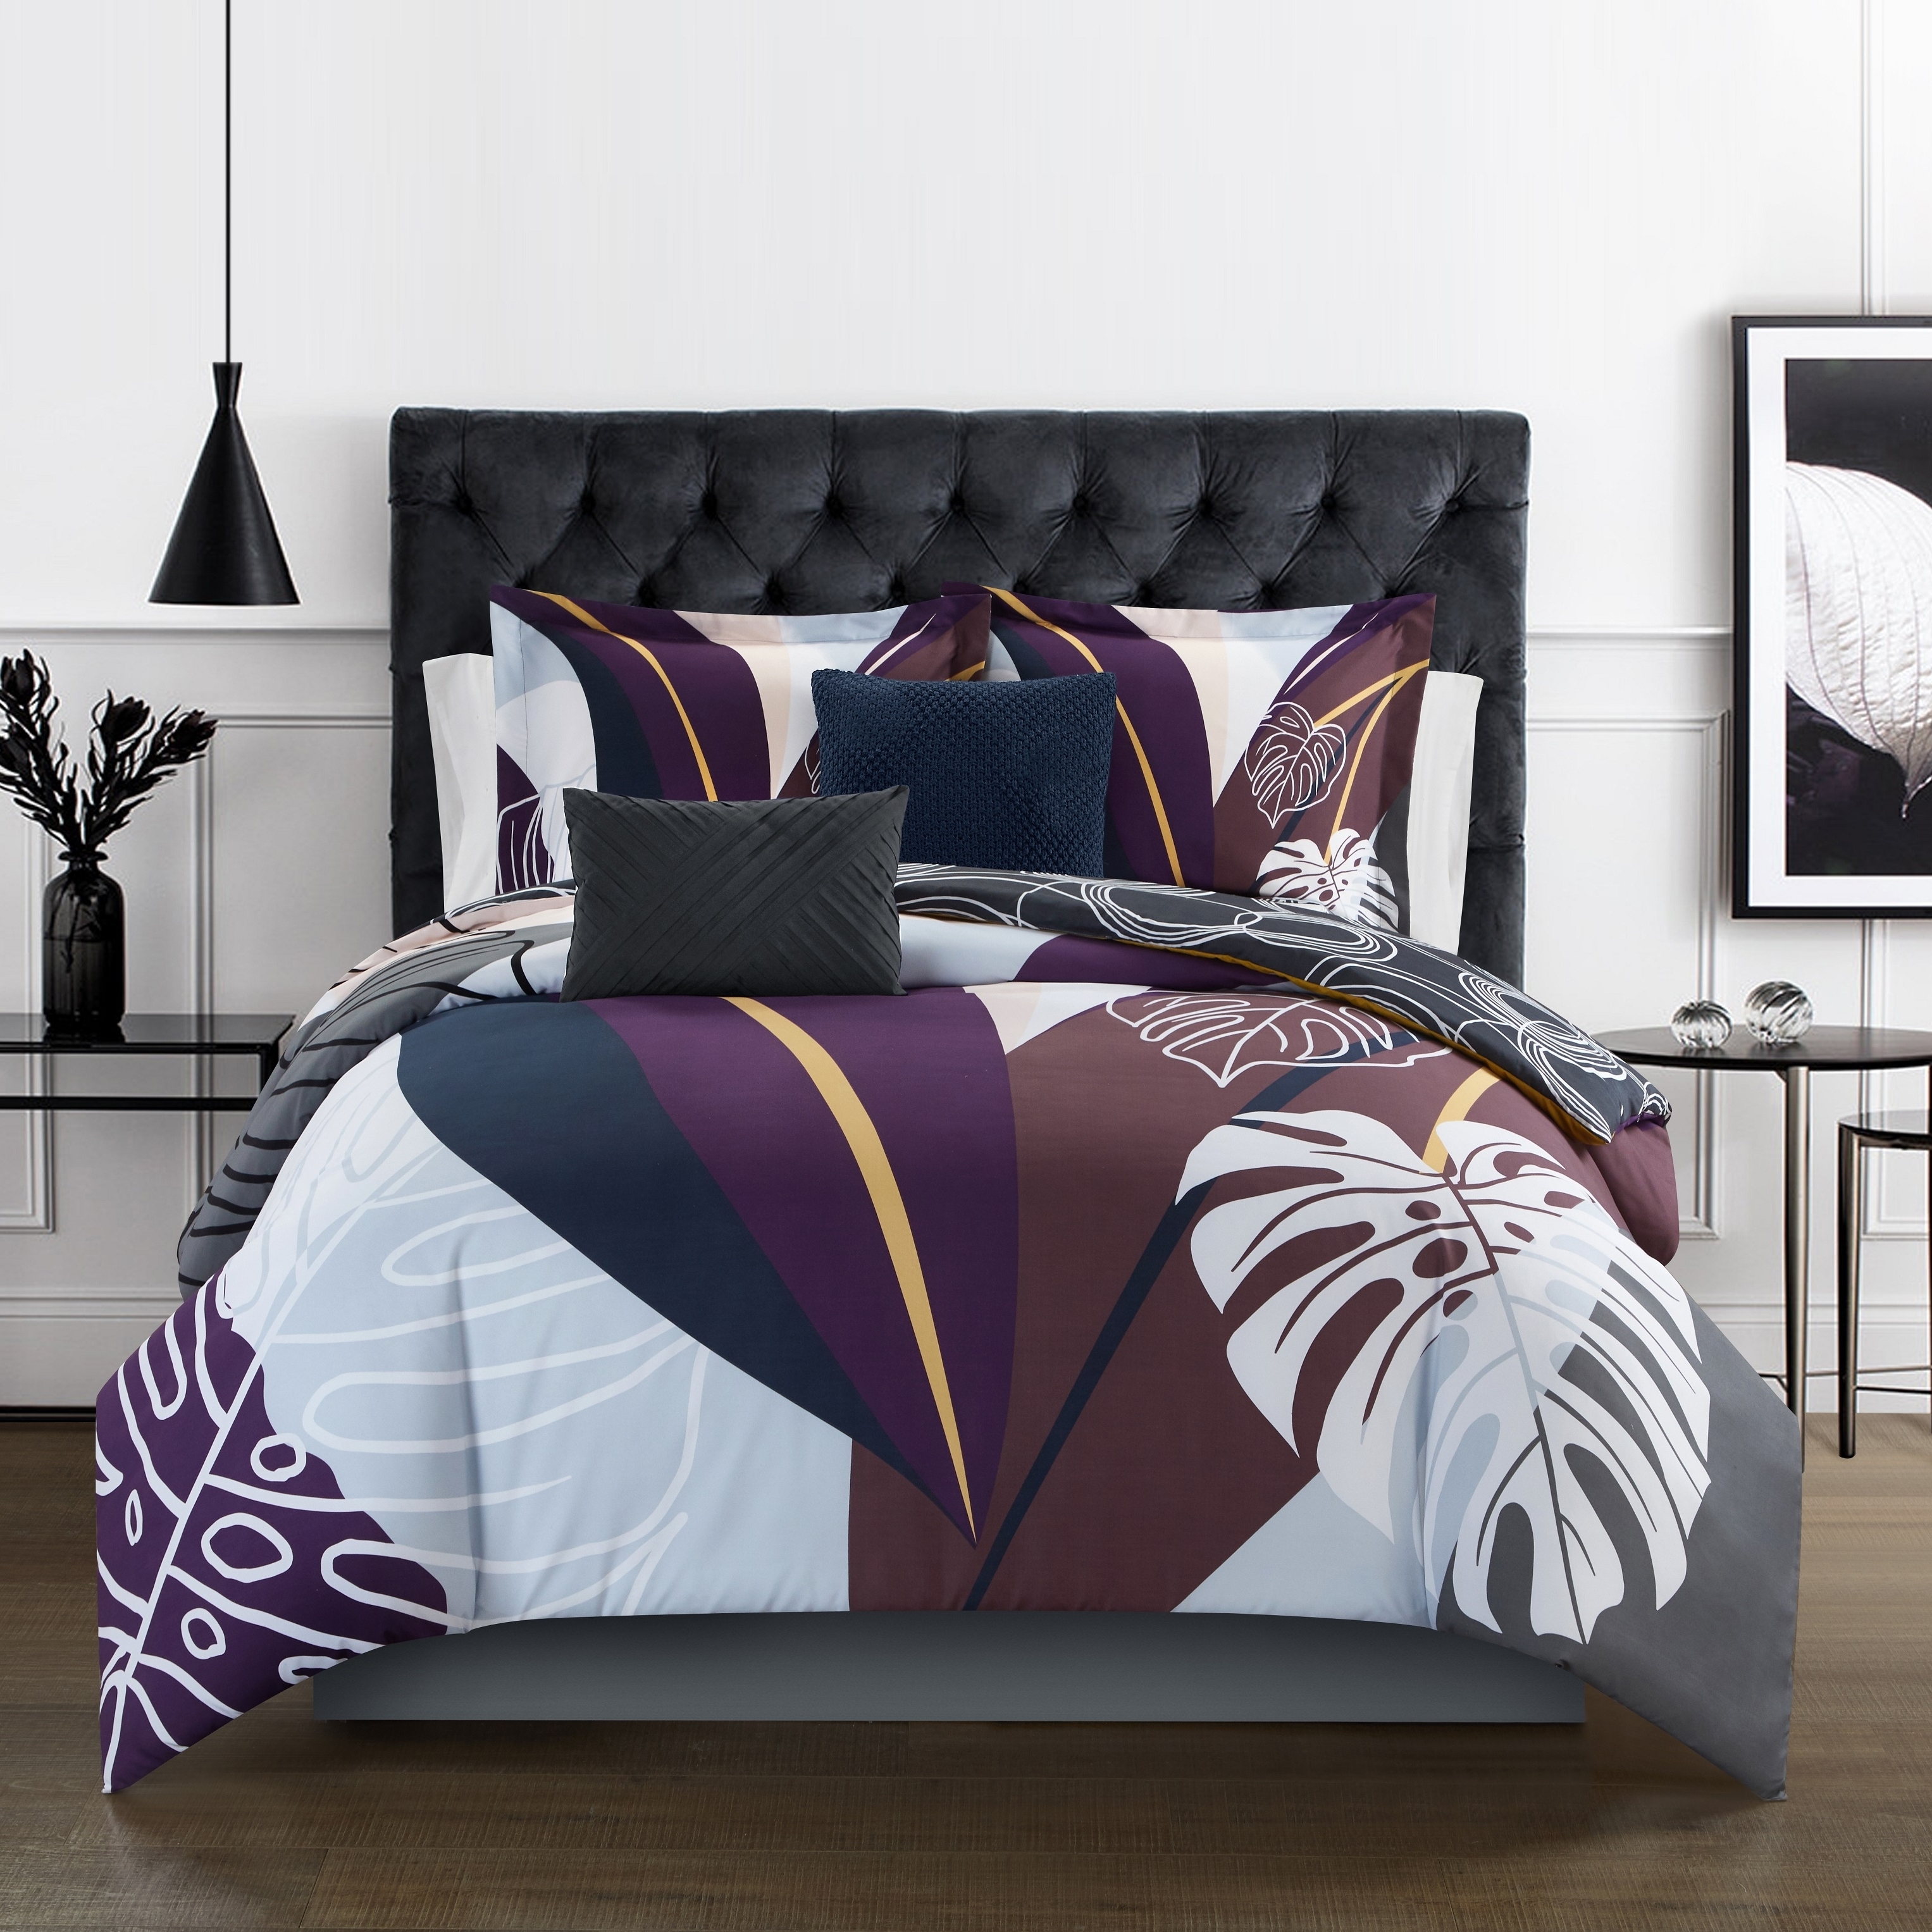 Emeraude 3 Piece Reversible Quilt Set Floral Print Cursive Script Design Bedding - Blue, Queen